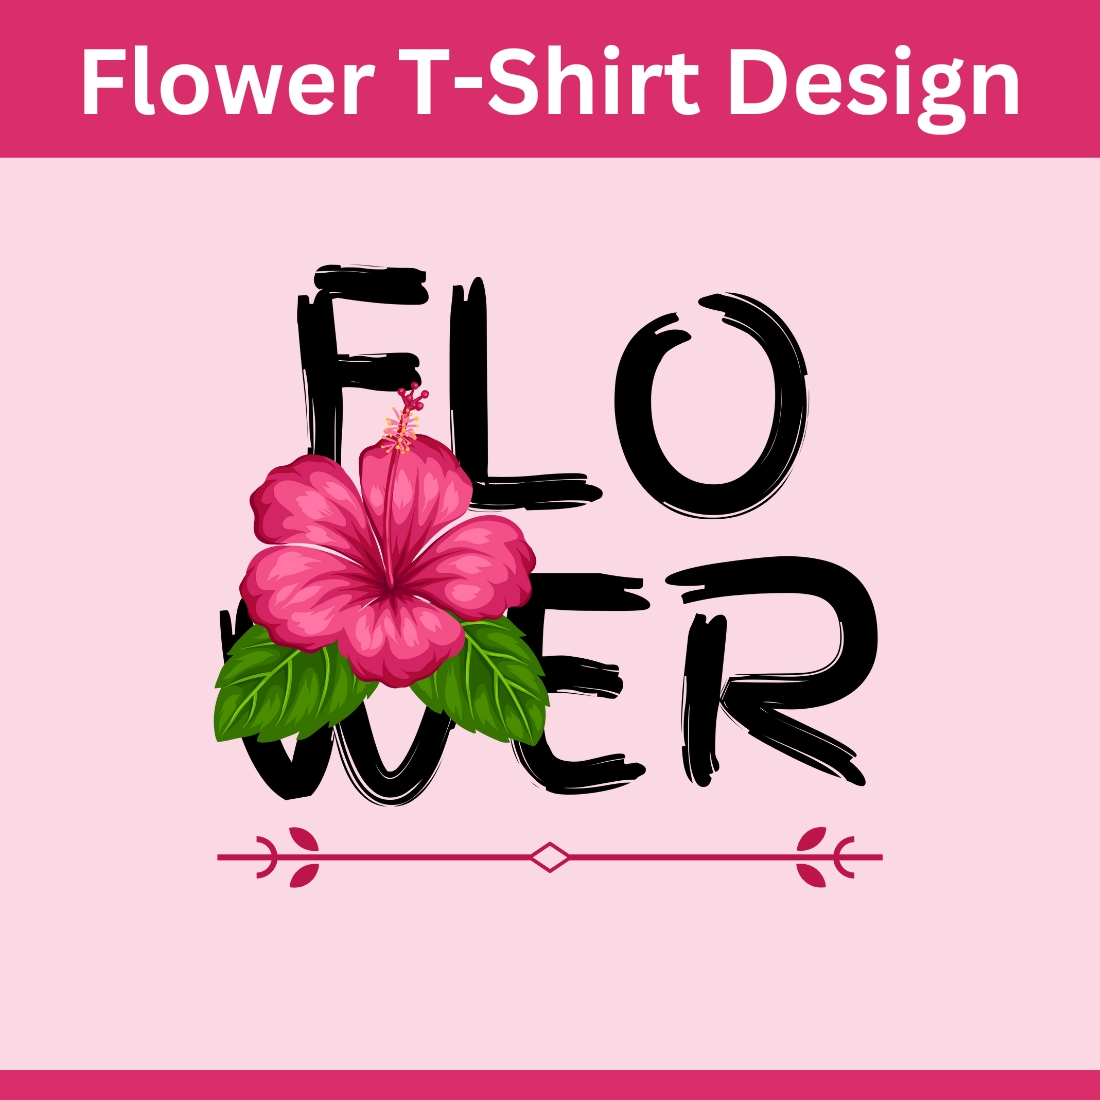 T-shirt, T-shirt design, Flower, Flower T-shirt New design, preview image.